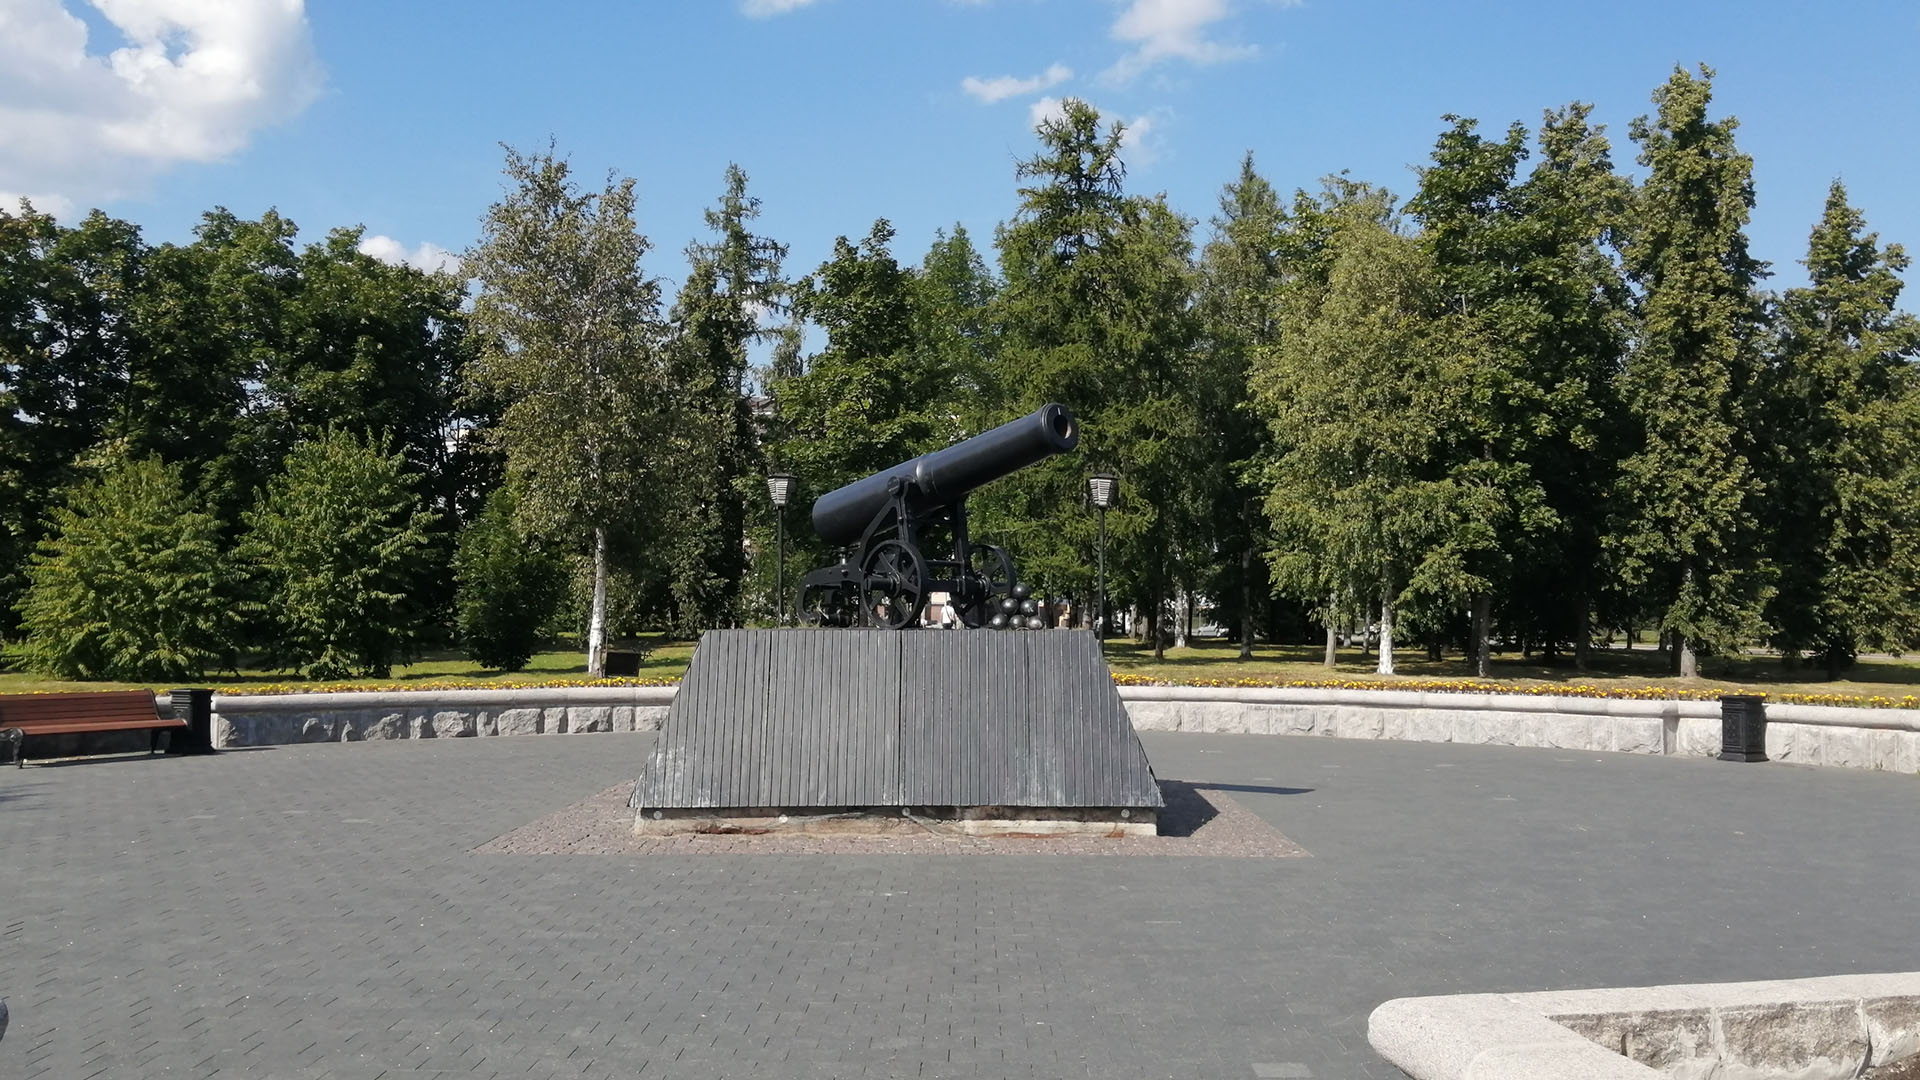 Площадка у памятника вымощена брусчаткой и тротуарной плиткой.